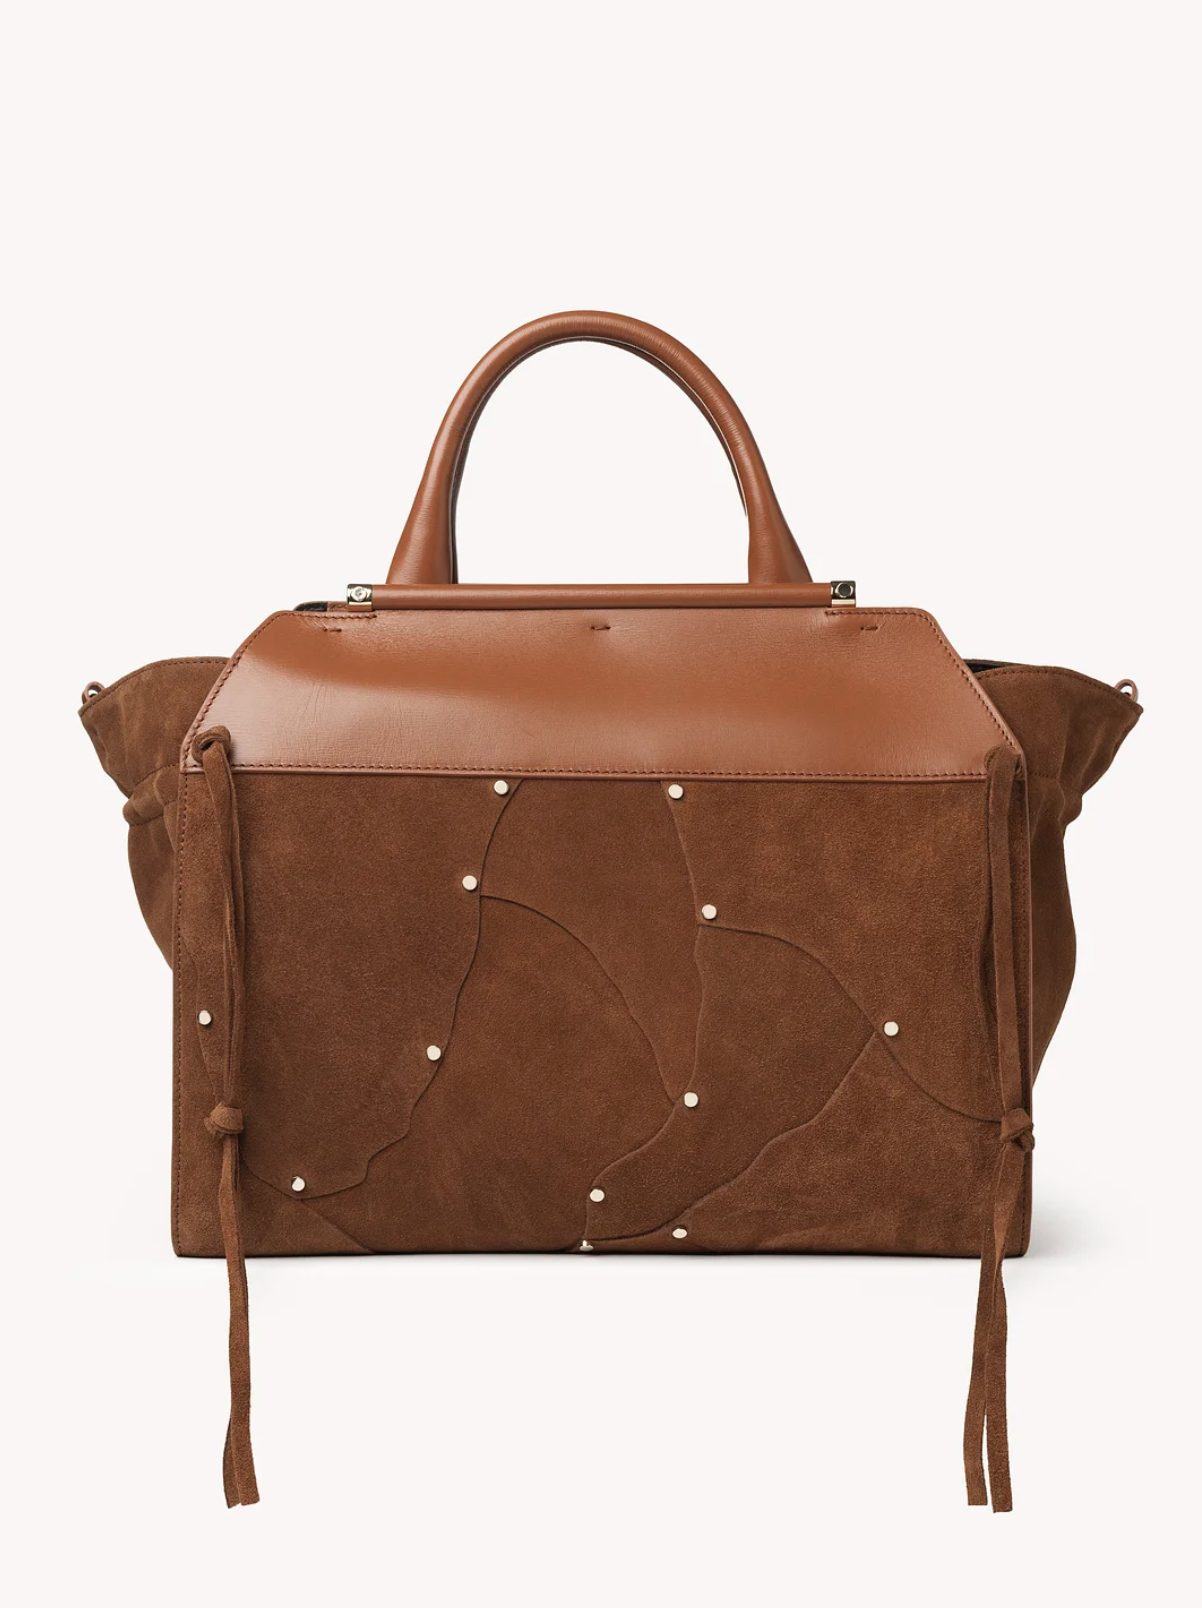 20 отличных дизайнерских сумок шоколадного оттенка